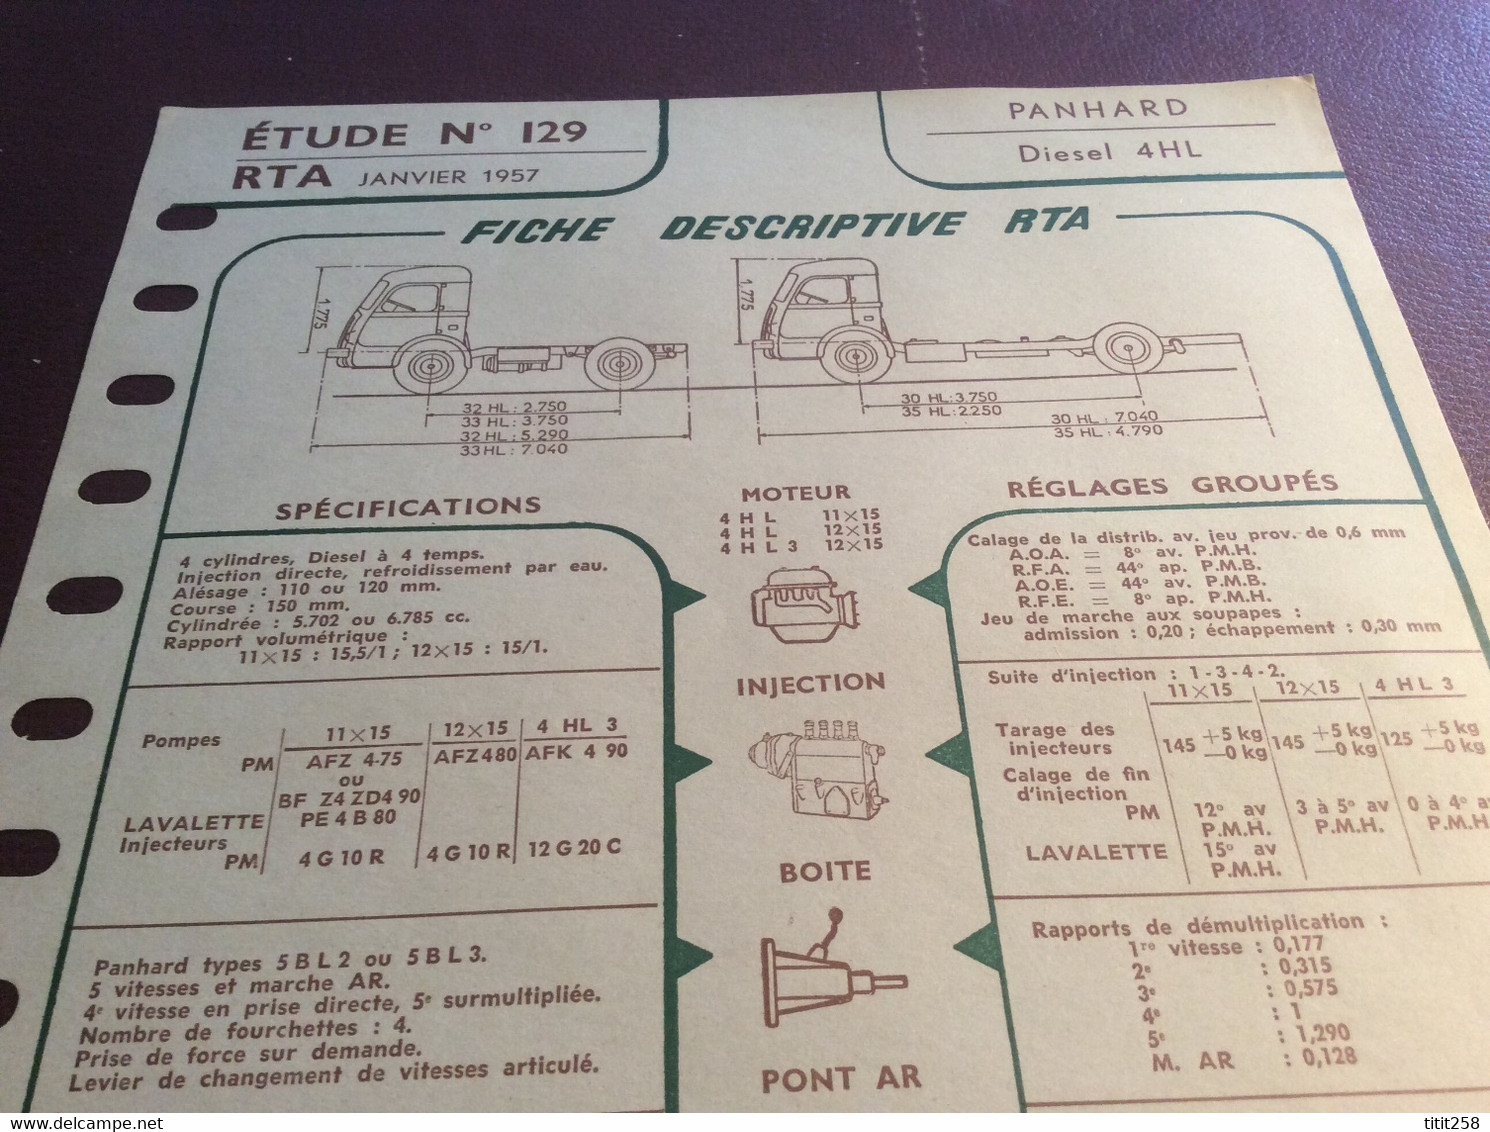 Fiche Descriptive RTA Panhard Diesel 4 HL . 1957 - Camions